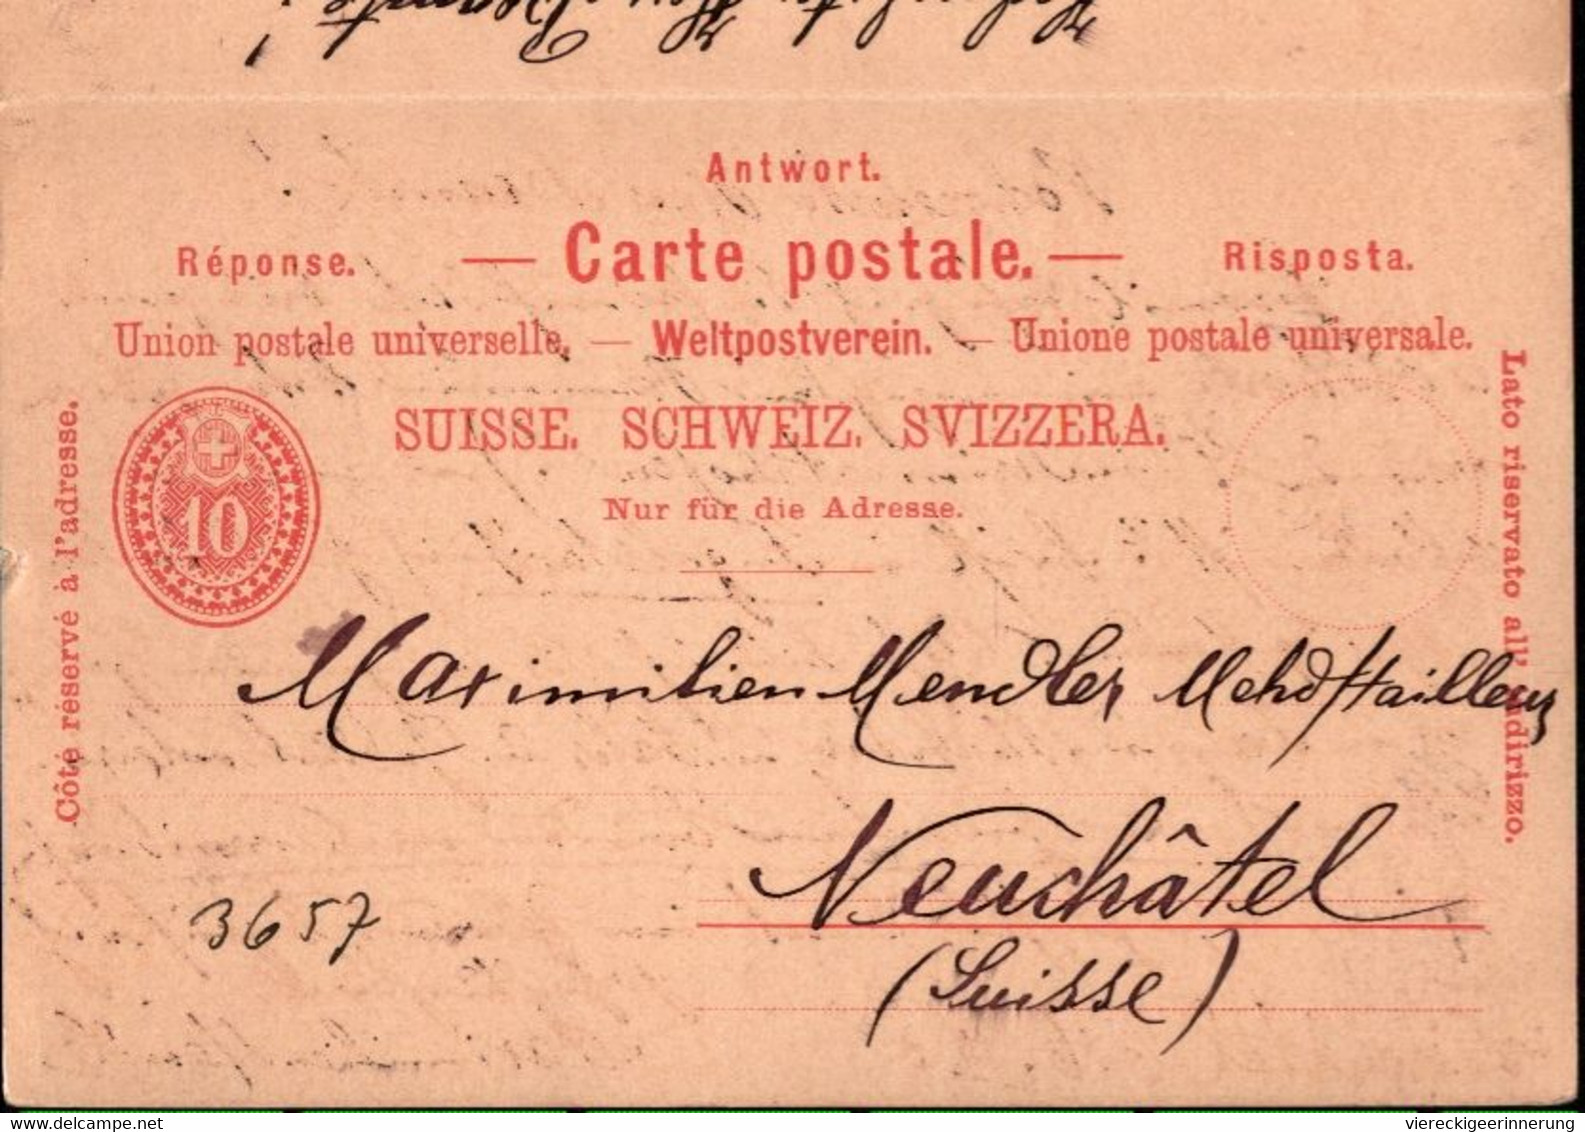 ! Lot von 14 Ganzsachen aus der Schweiz, 1880-1923